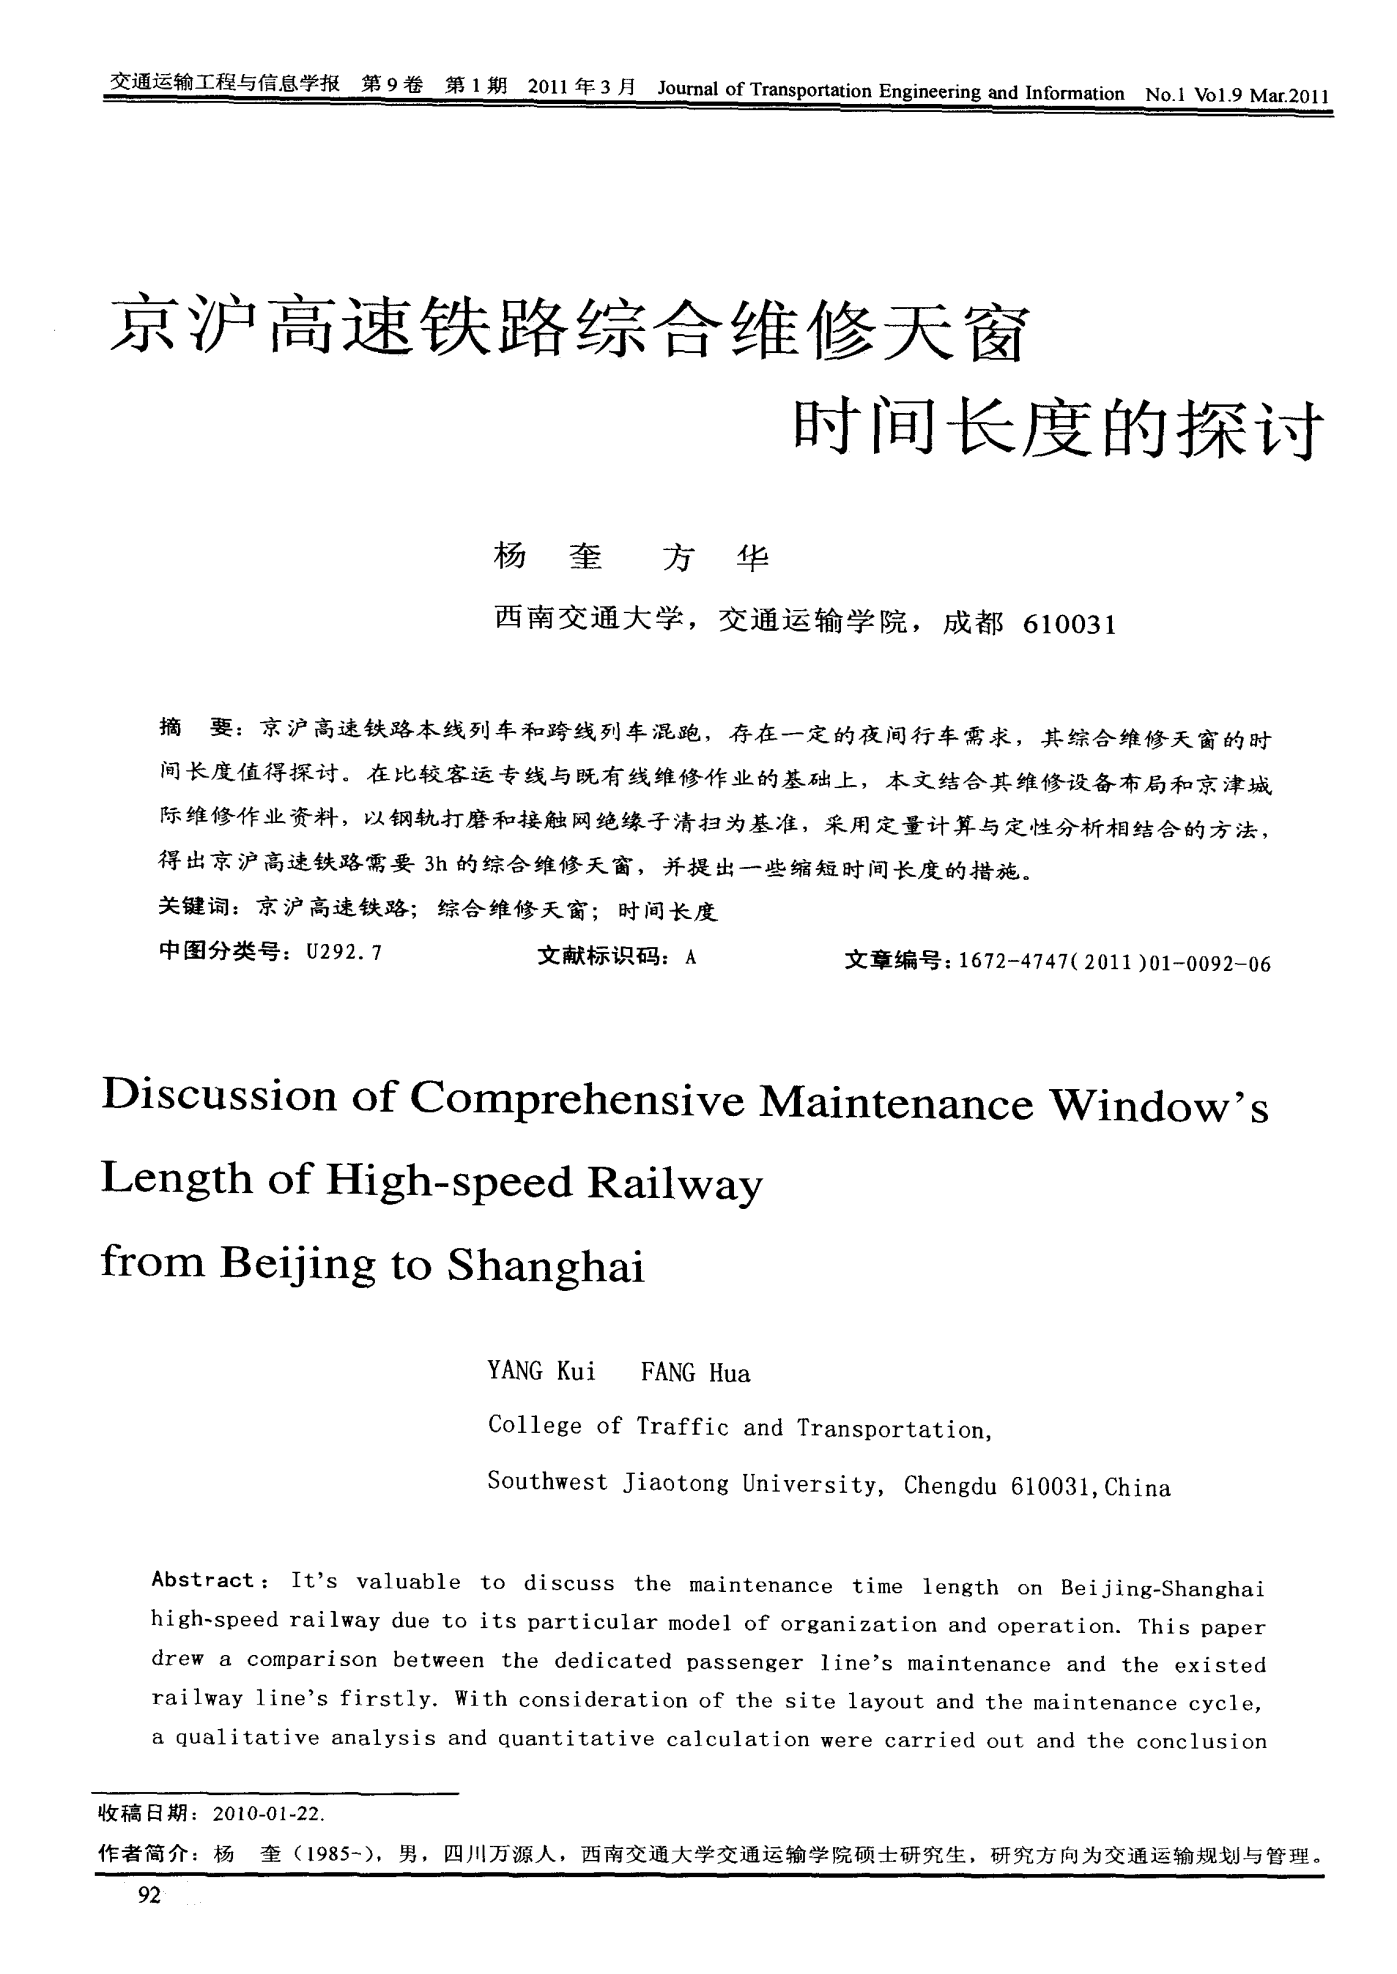 京沪高速铁路综合维修天窗时间长度的探讨